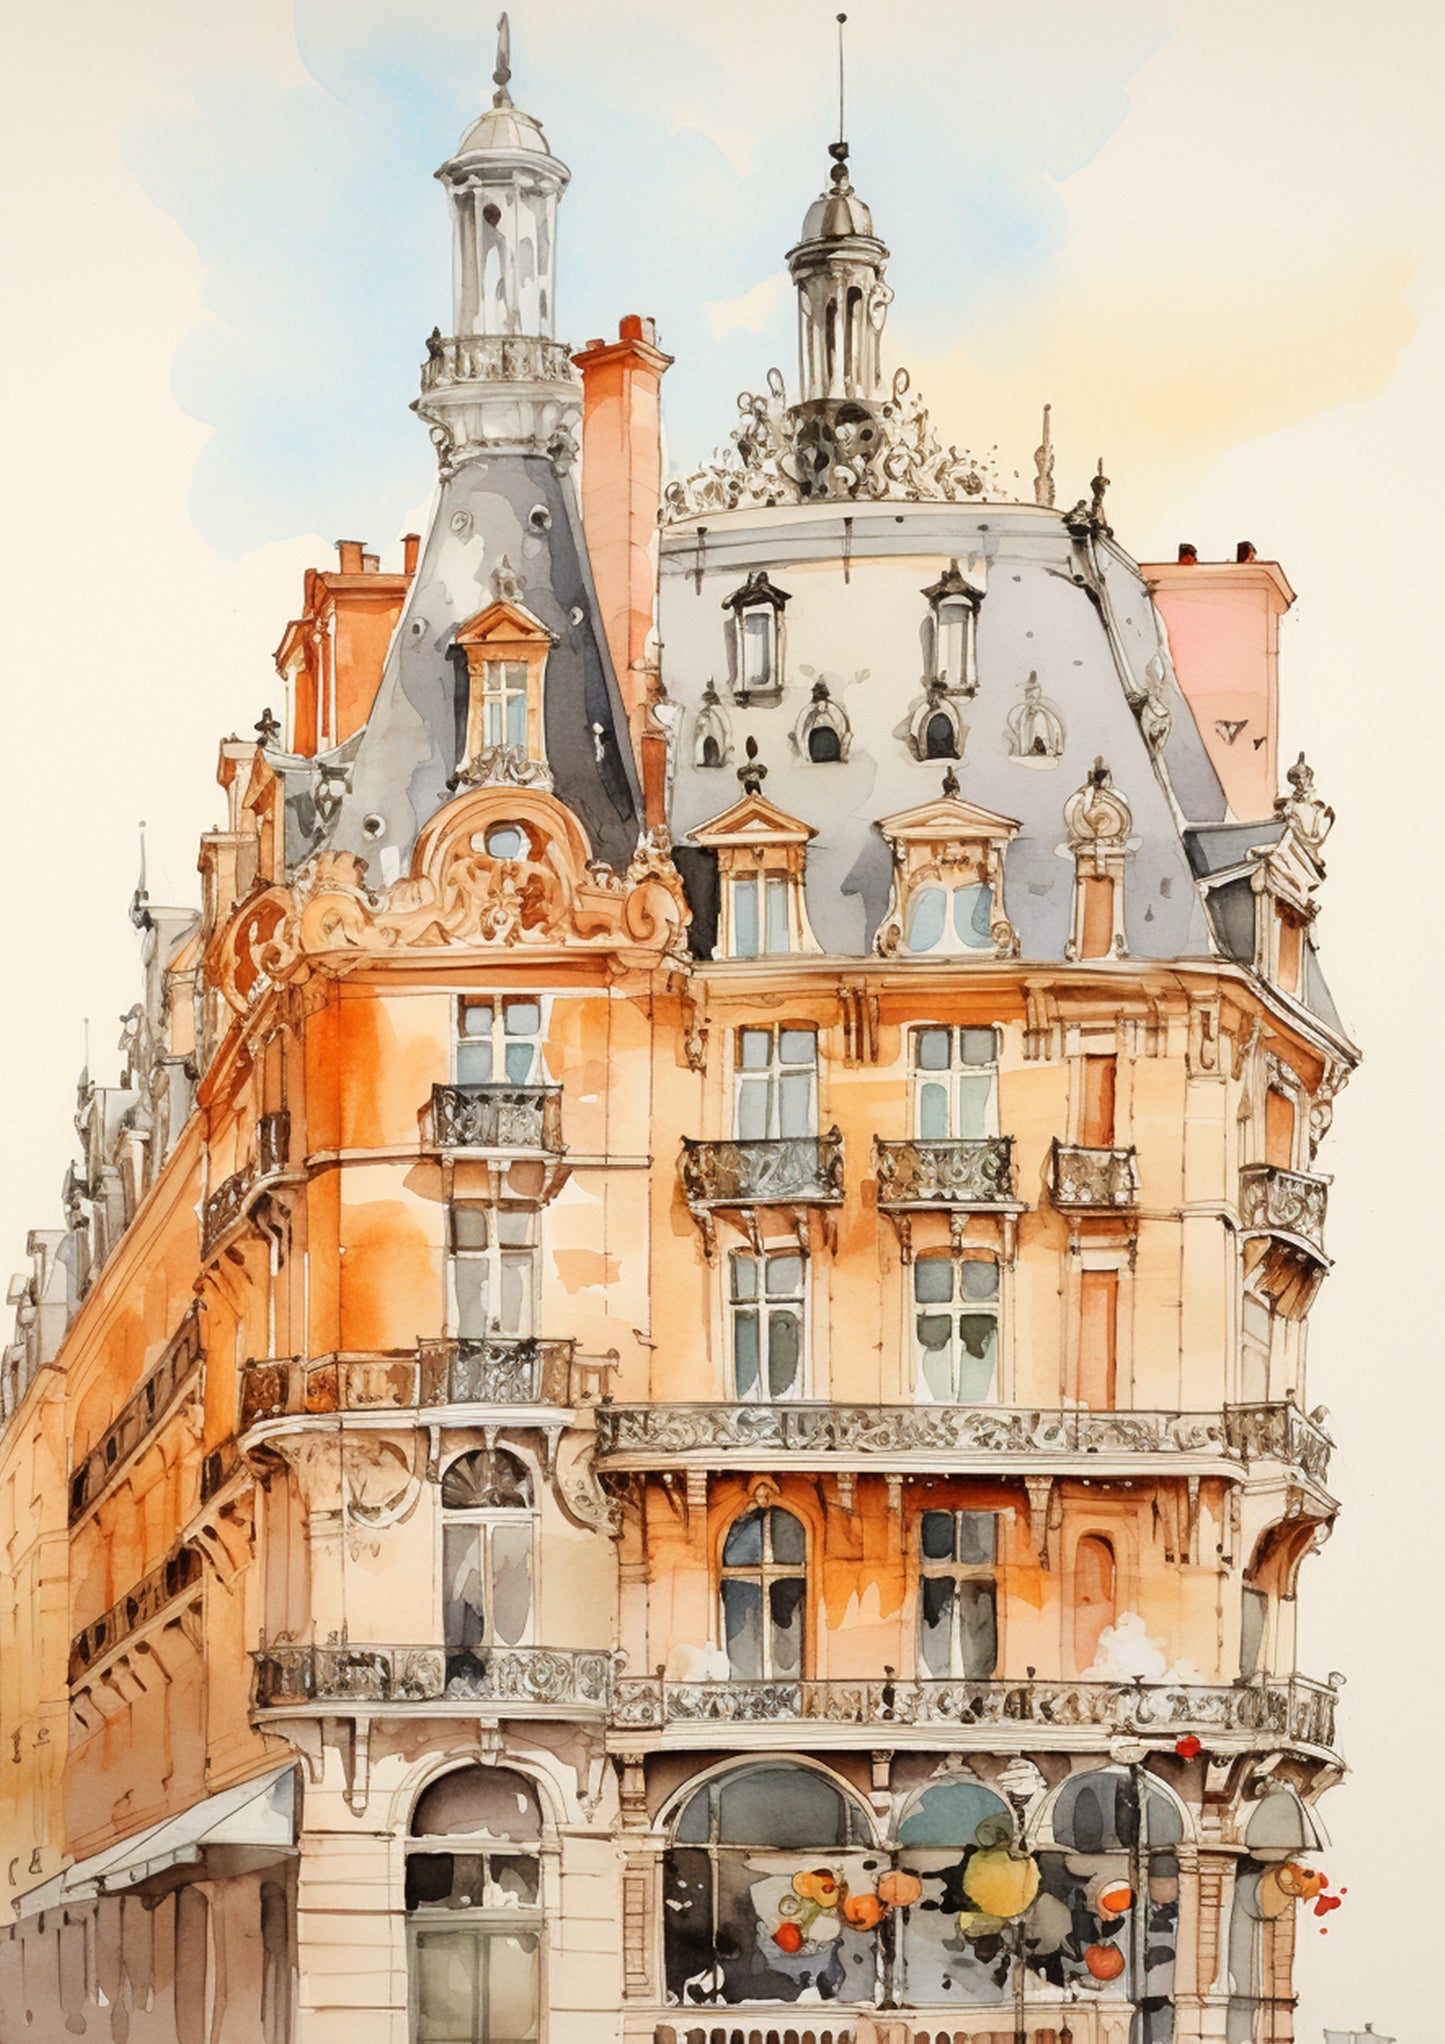 The Architecture collection - Paris 2